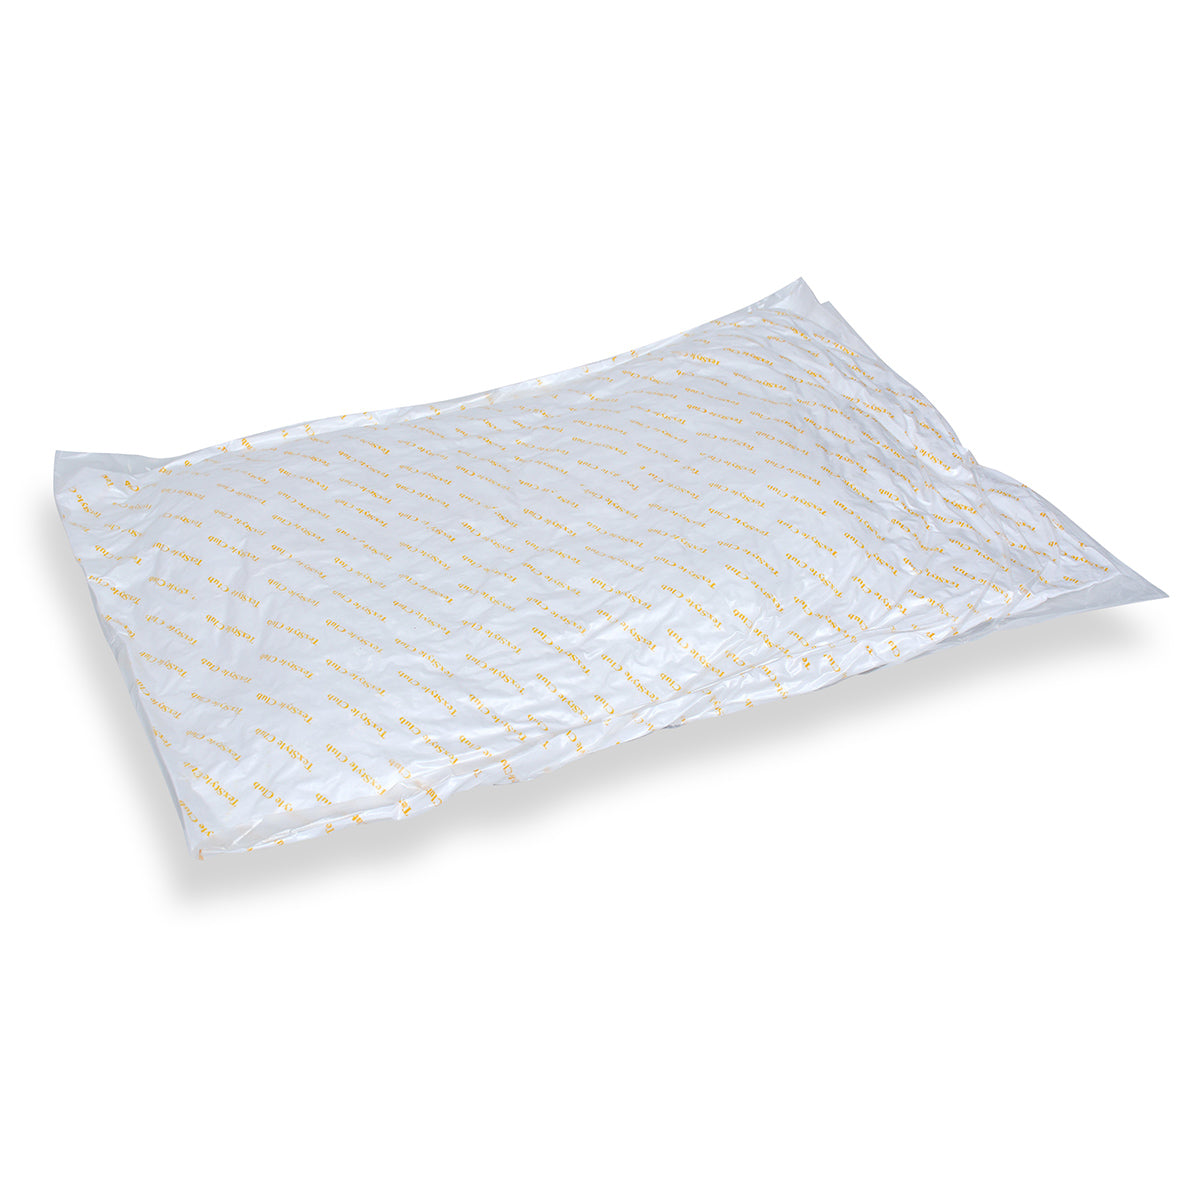 Hollow Fiber Pillow / Pillow PES Insert 45x45 cm 300 g